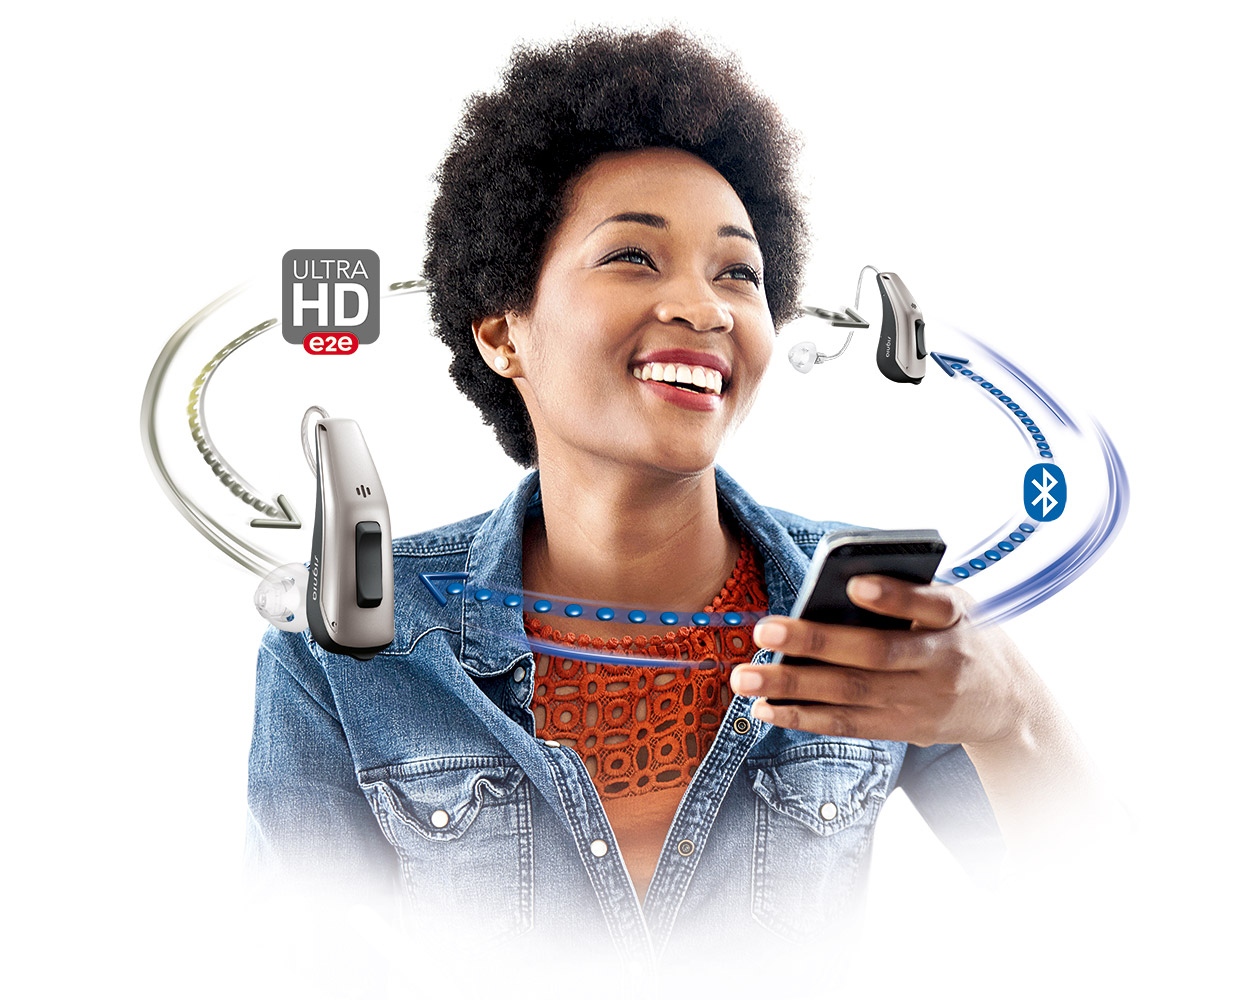 Signia høreapparater gir en naturlig egen stemme med kompromissløs audiologi og direkte streaming. På grunn av lavt strømtrekk kan Signia tilby et trådløst system som kombinerer Bluetooth og Ultra HD e2e &#8211; det eneste i bransjen.